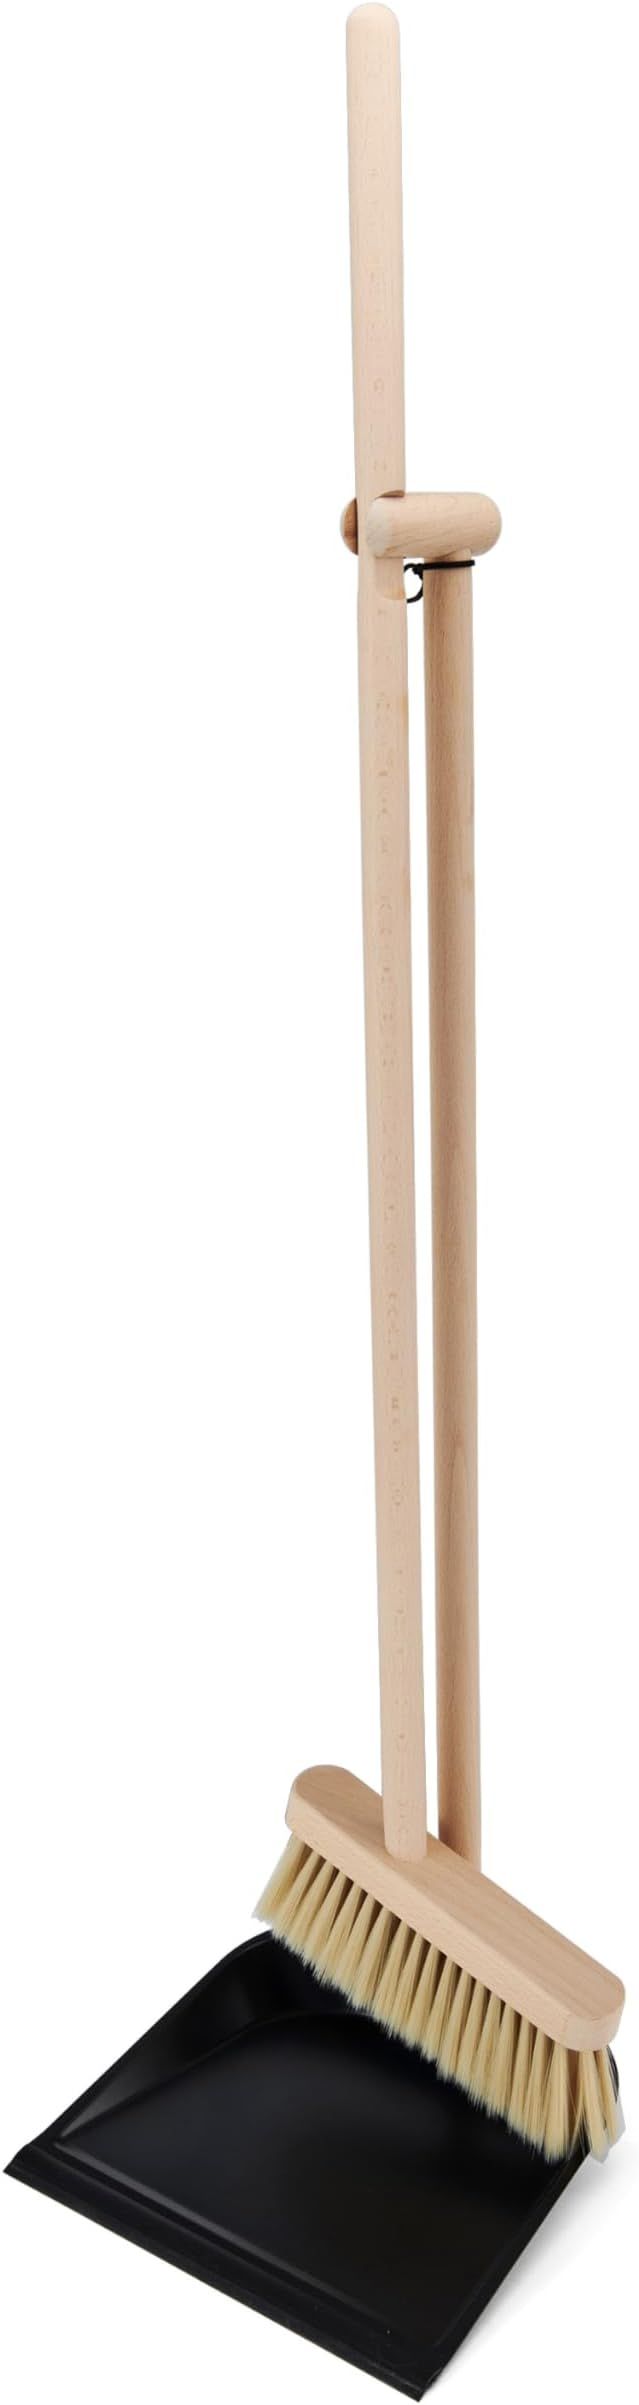 Copco Standing Broom with Dustpan, Beechwood | Amazon (US)